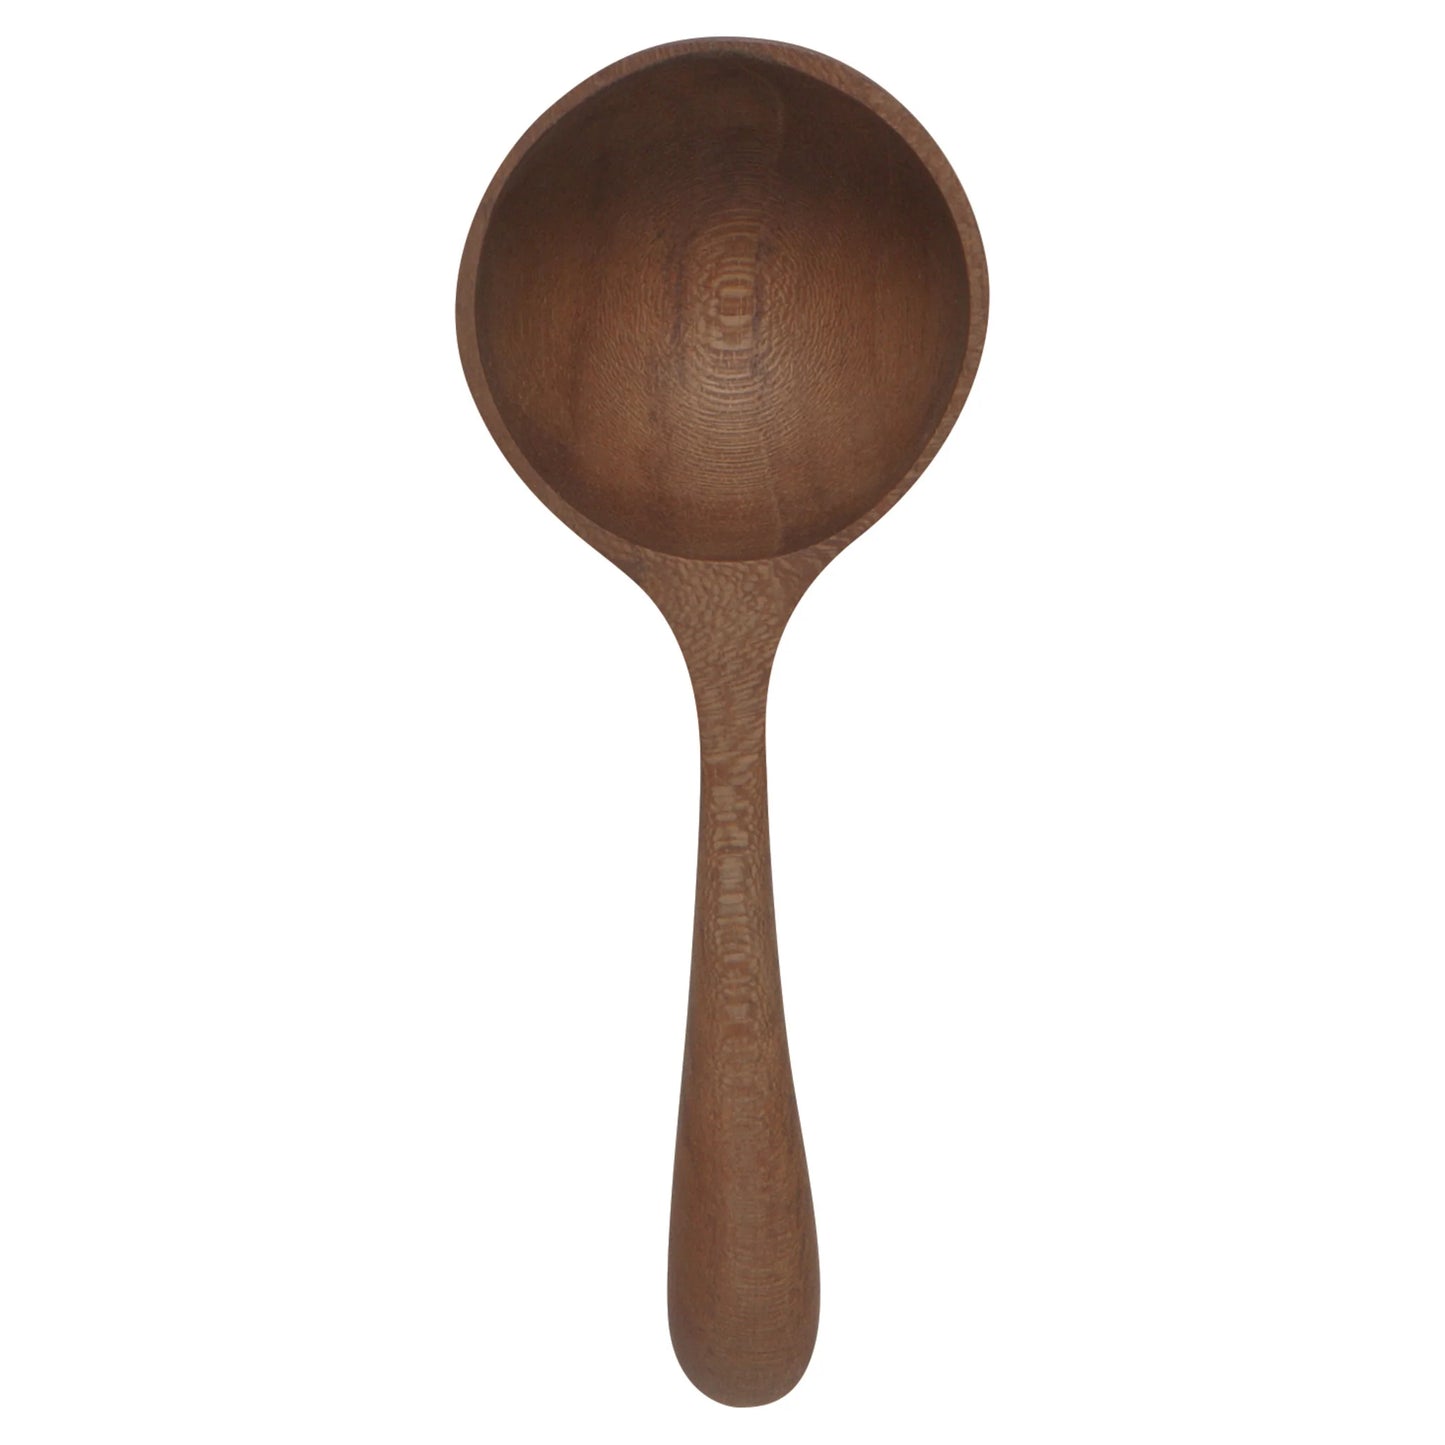 Teak Wood Coffee Spoon